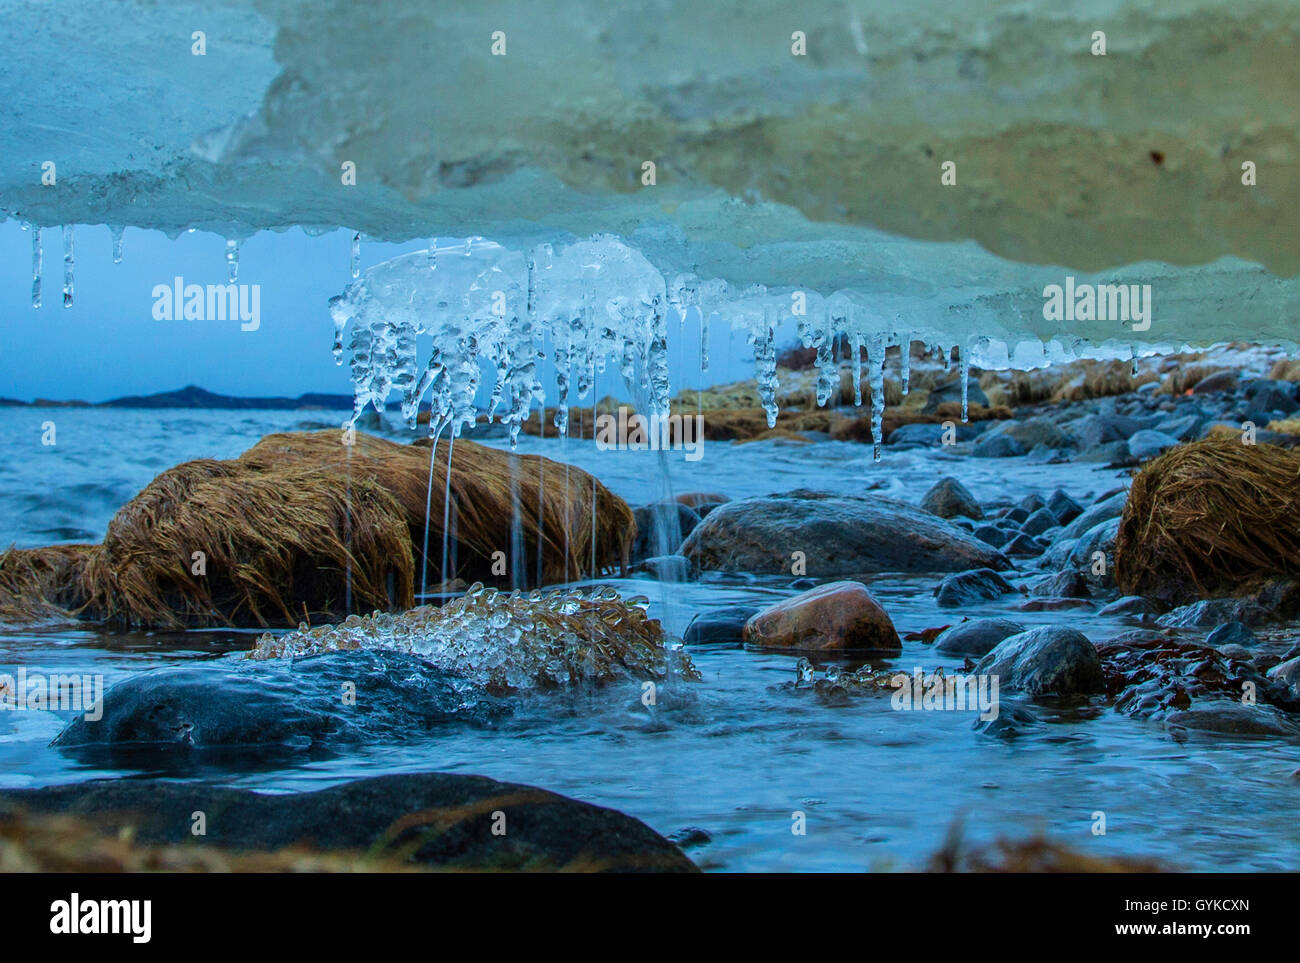 L'acqua di fusione del ghiaccio dalla bocca del fiume scende verso il mare con la bassa marea e forme di perle di ghiaccio, Norvegia, Fylke Troms, Senja Bergsfjord Foto Stock